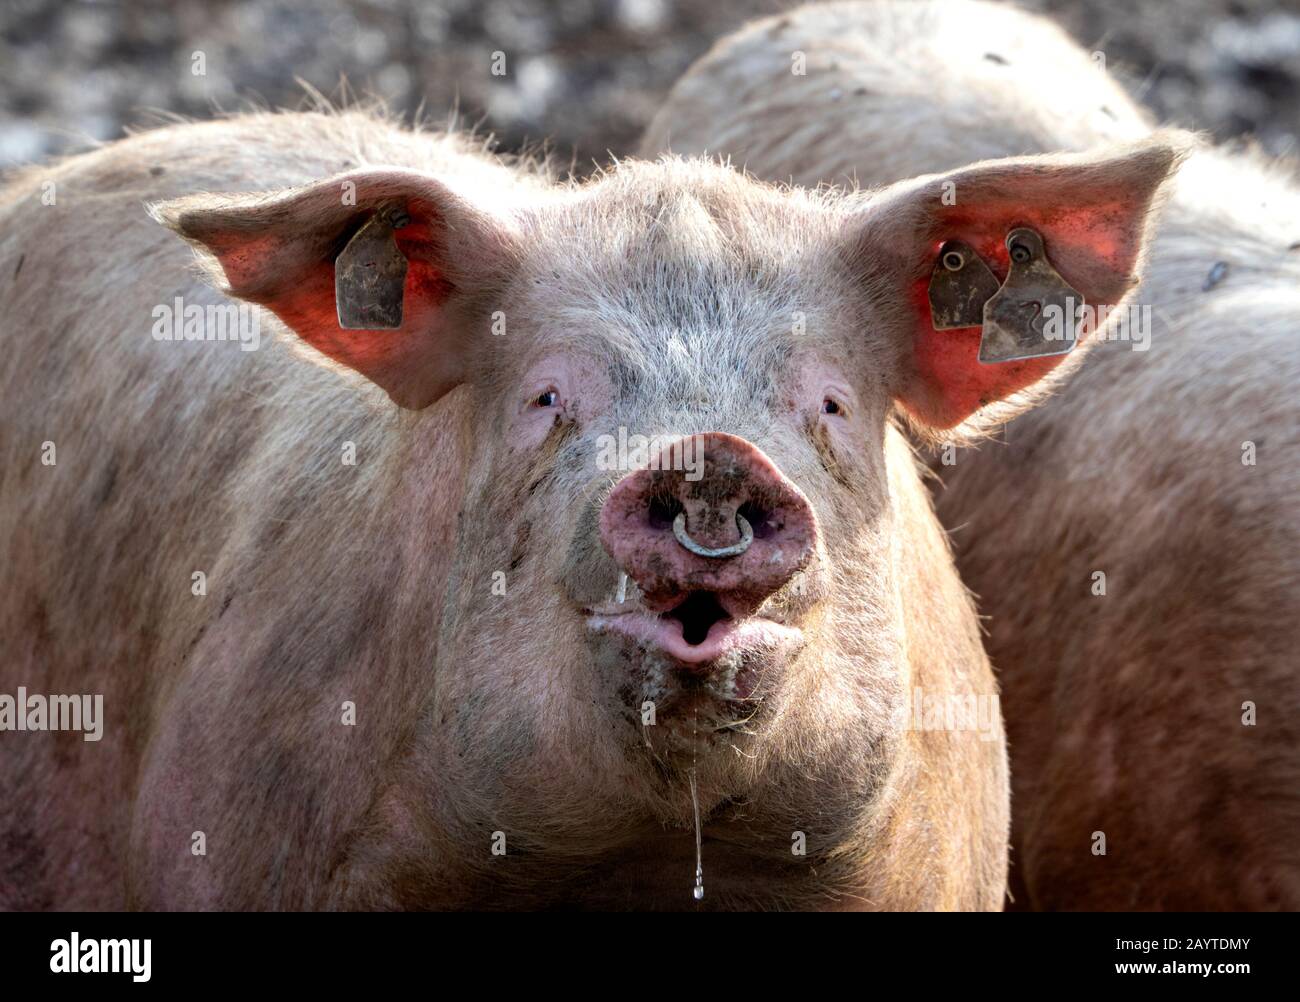 Porc gros, rose, poiré et slobing : les porcs domestiques, qui sont omnivores, sont des mammifères hautement sociaux et intelligents semblables, biologiquement, aux humains. Banque D'Images